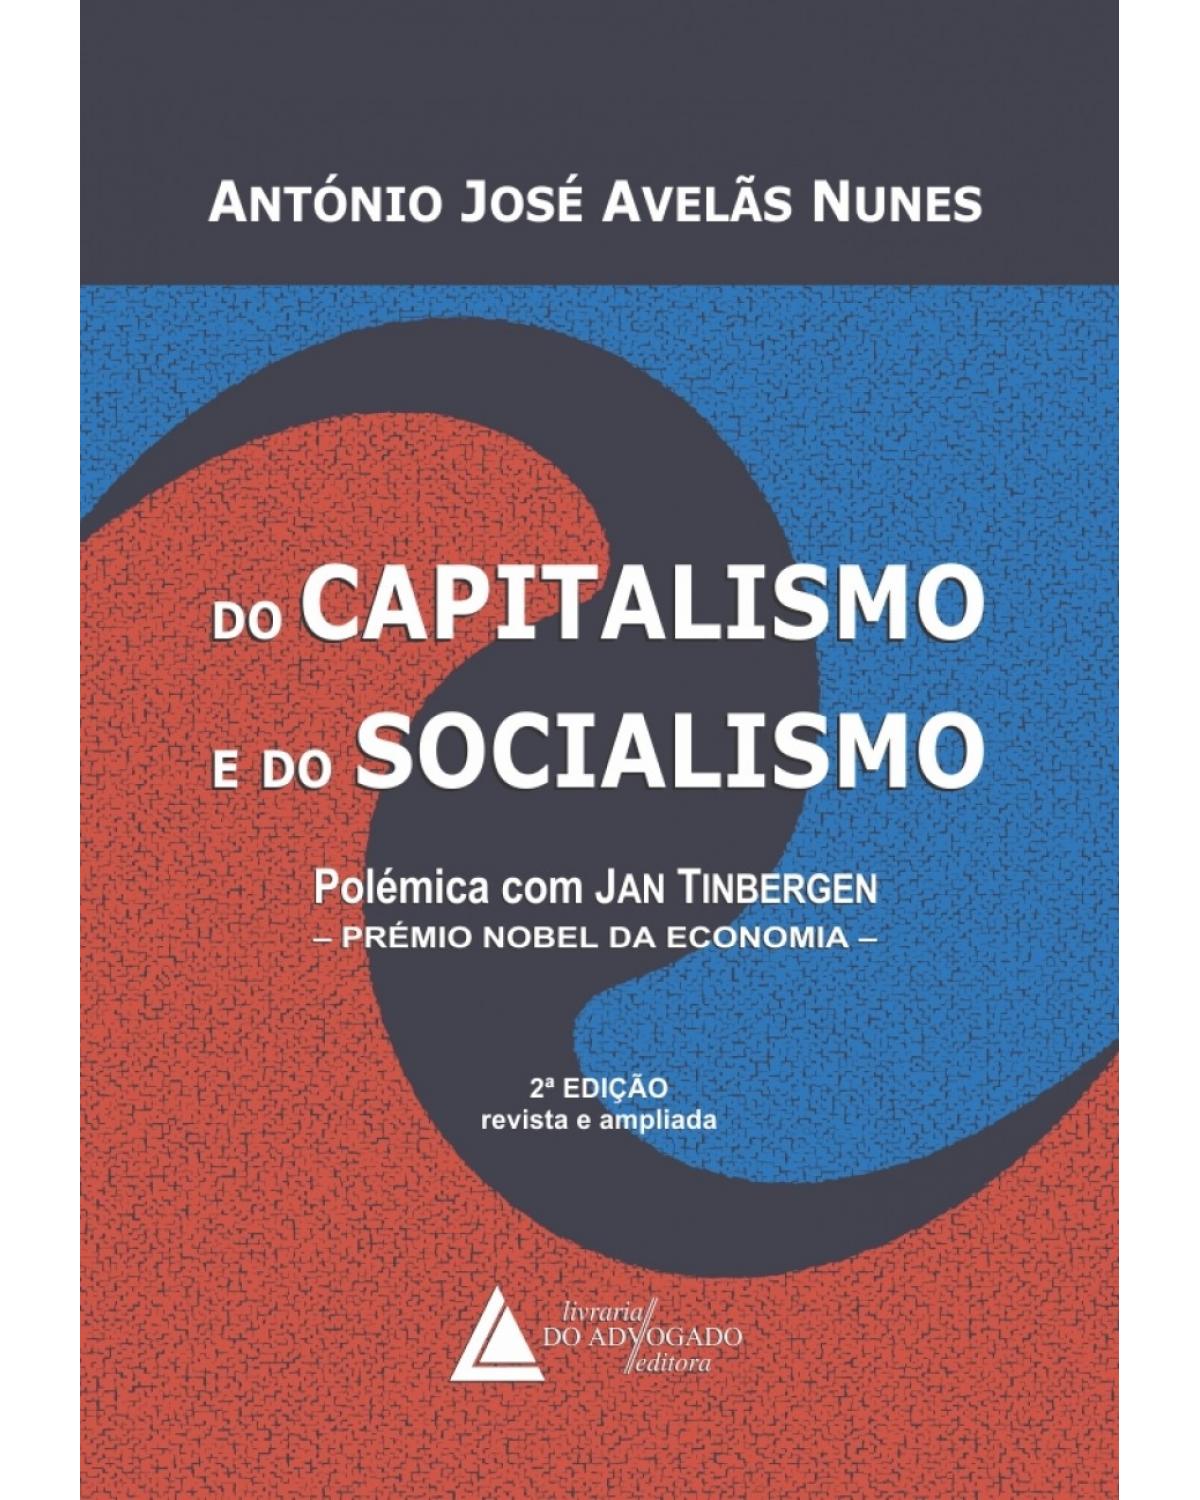 Do capitalismo e do socialismo: polêmica com Jan Tinbergen - Prémio Nobel da Economia - 2ª Edição | 2018